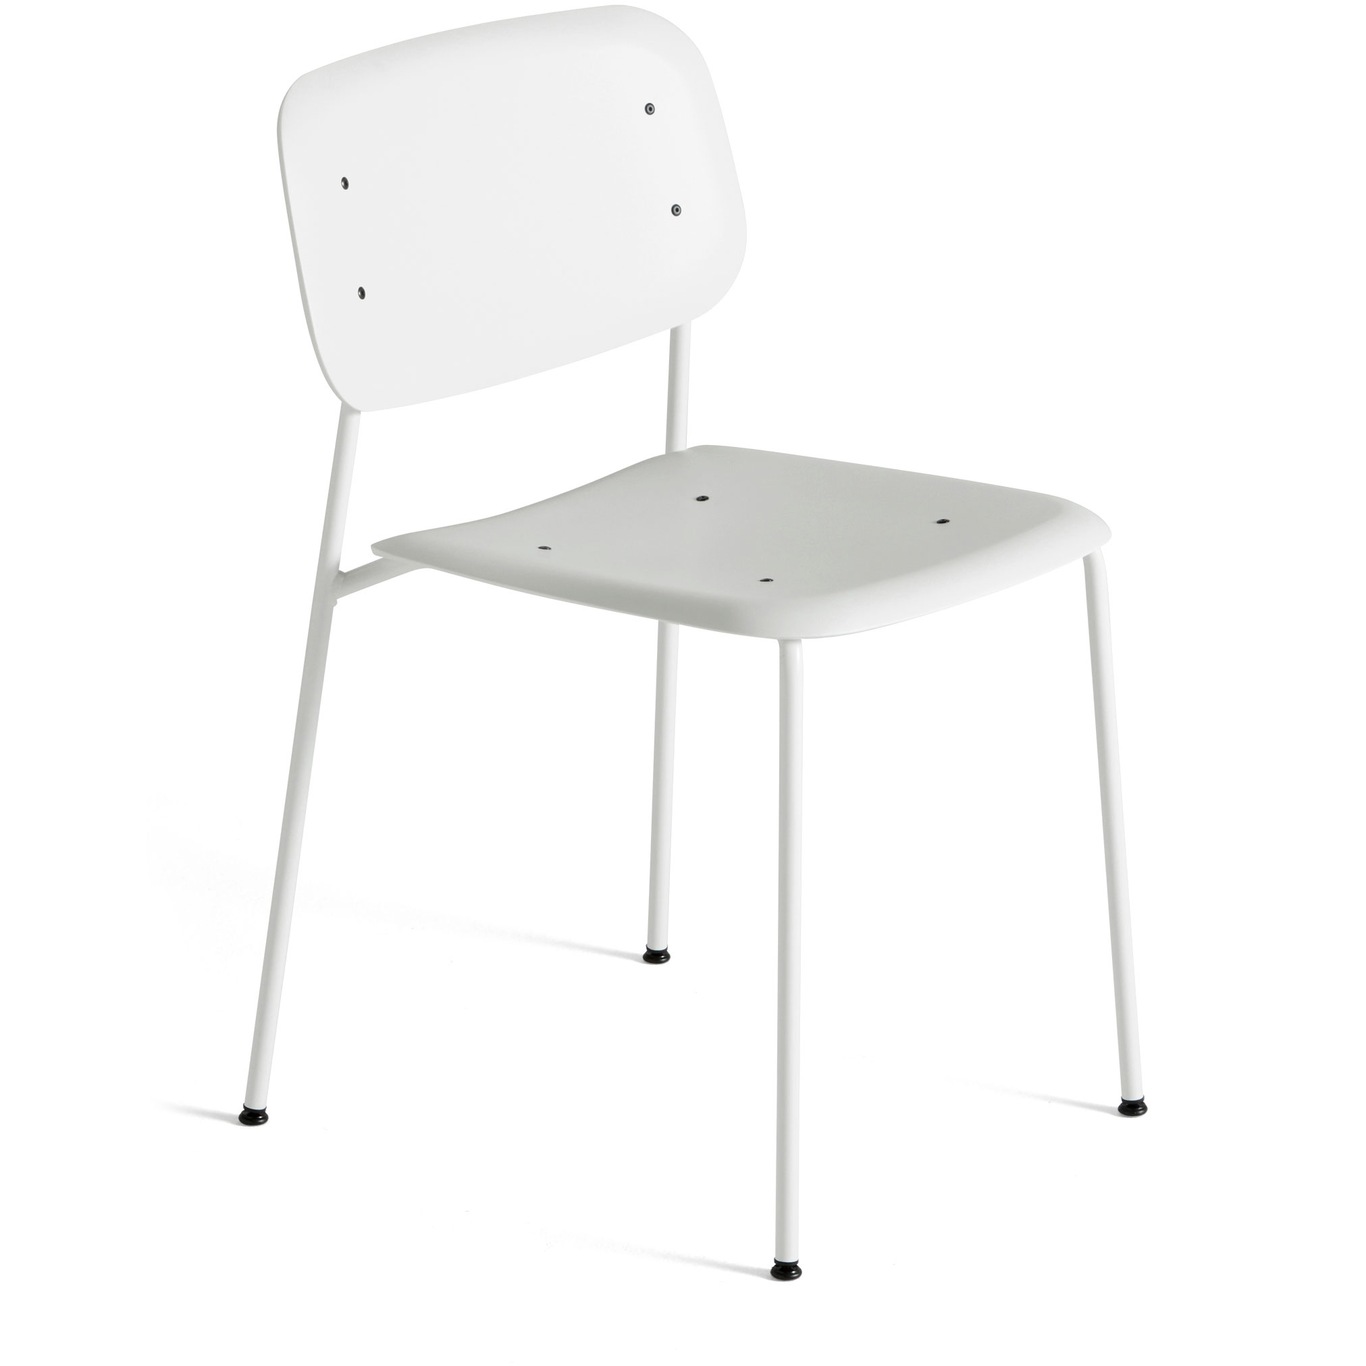 Soft Edge 45 Chair, White